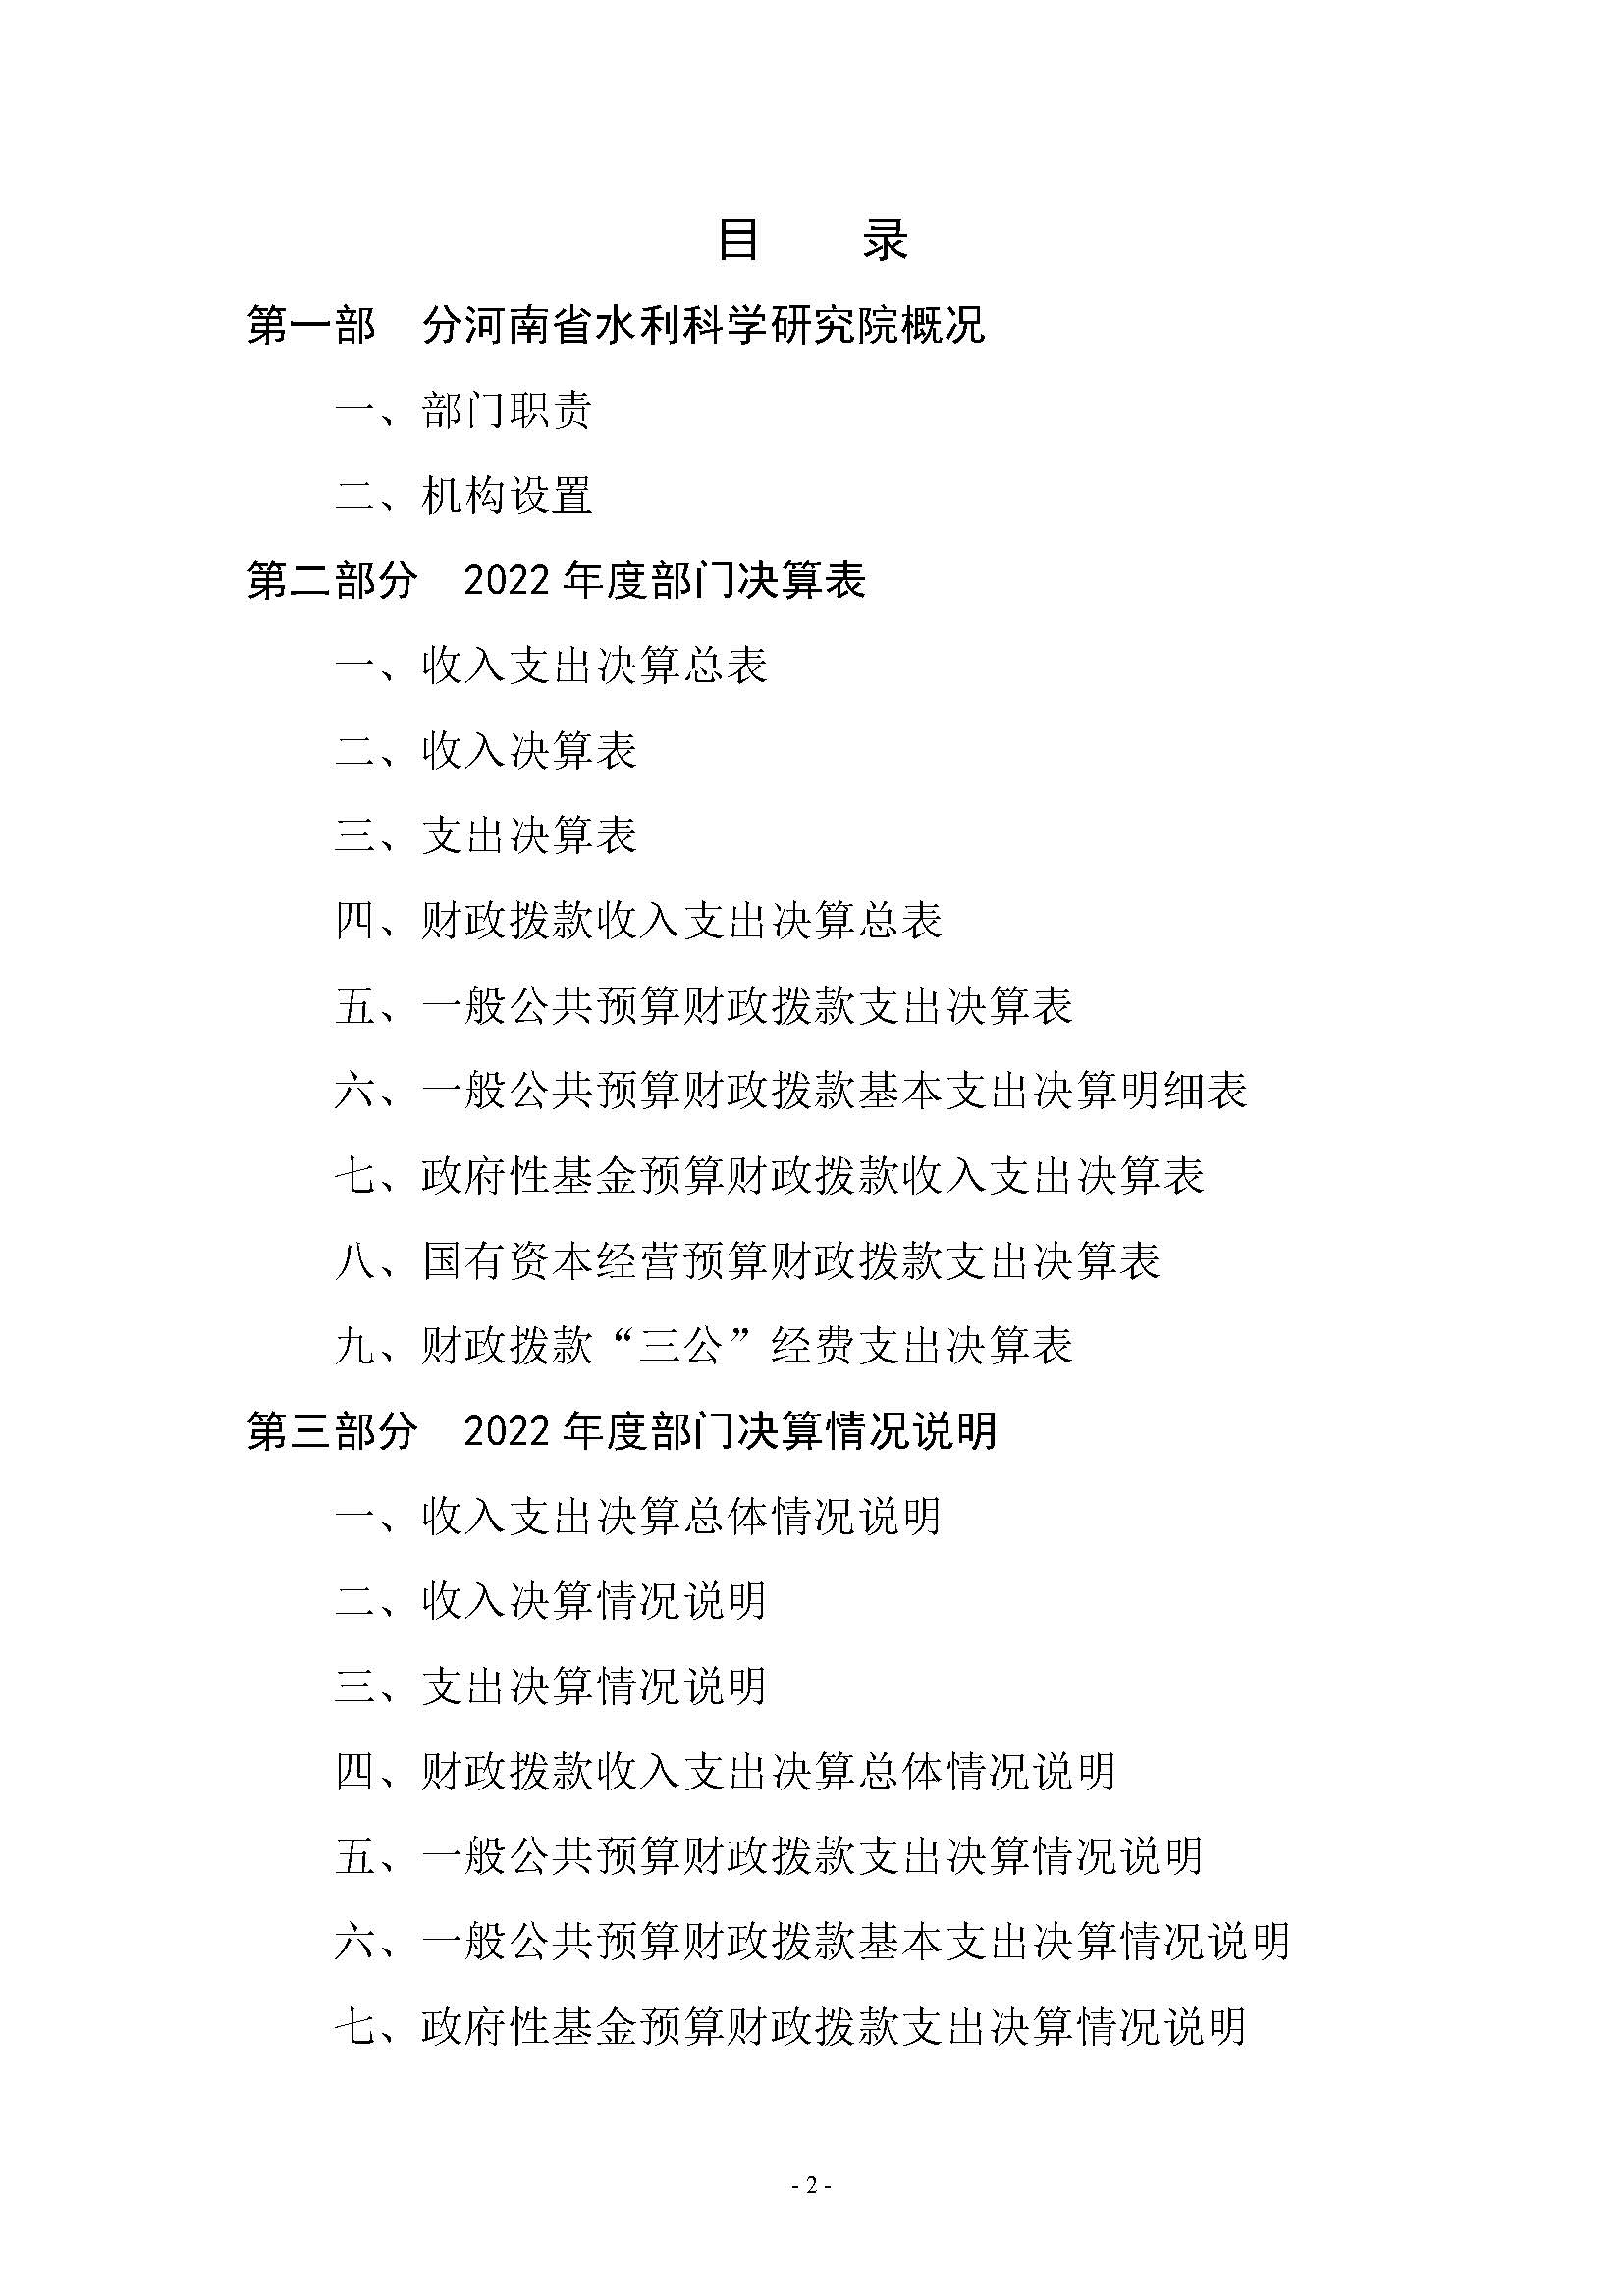 河南省水利科学研究院2022年年度省直部门决算公开(2)_页面_02.jpg